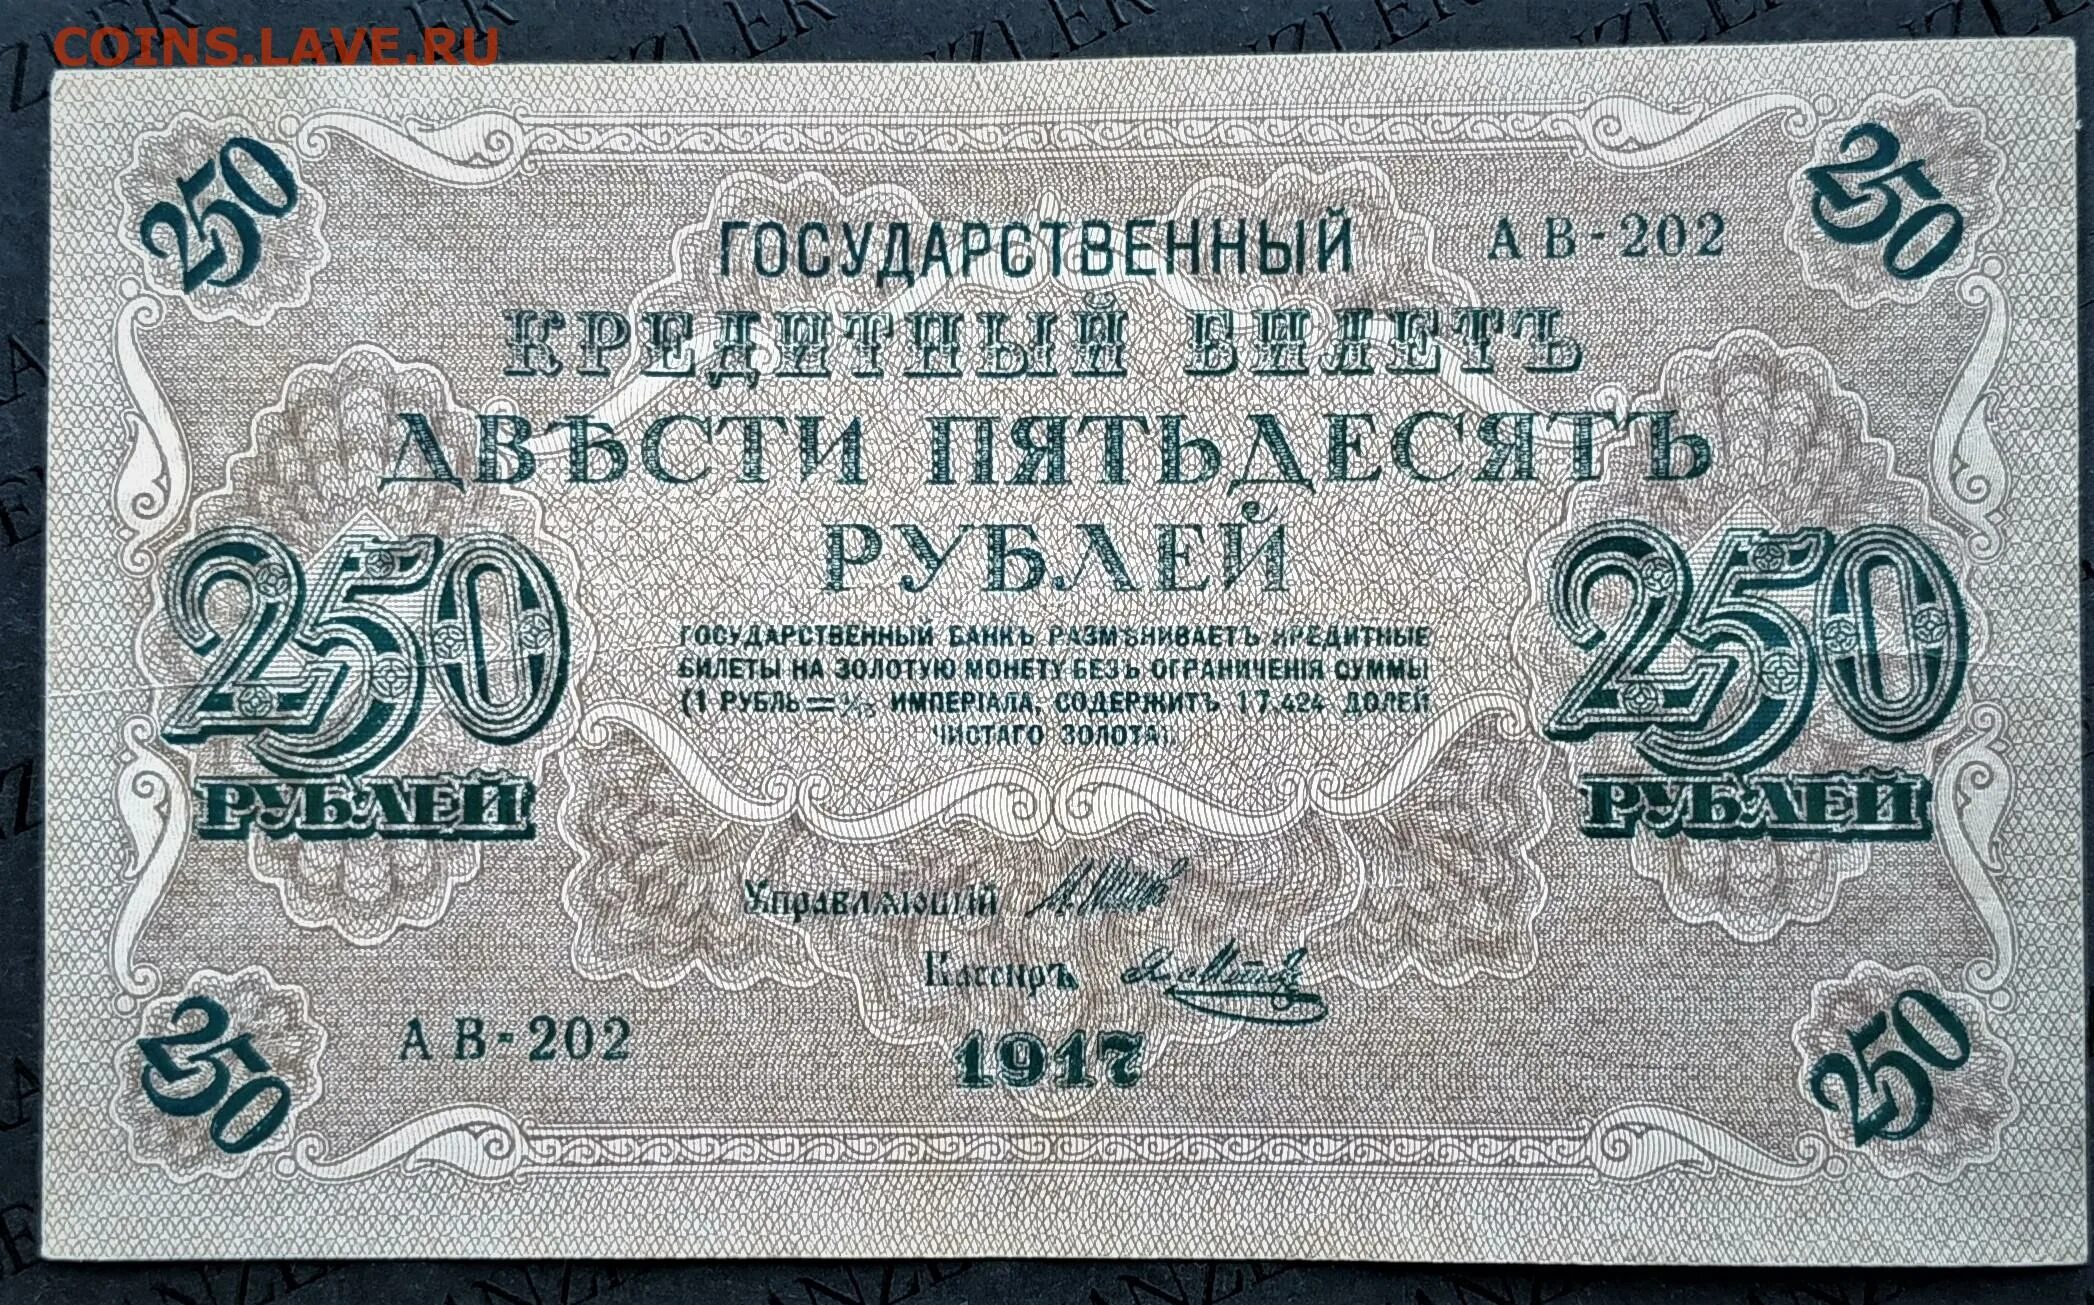 250 рублей россии. Купюра бона 250 рублей 1917. Купюра 250 рублей 1917 года со свастикой. 250 Рублей со свастикой.